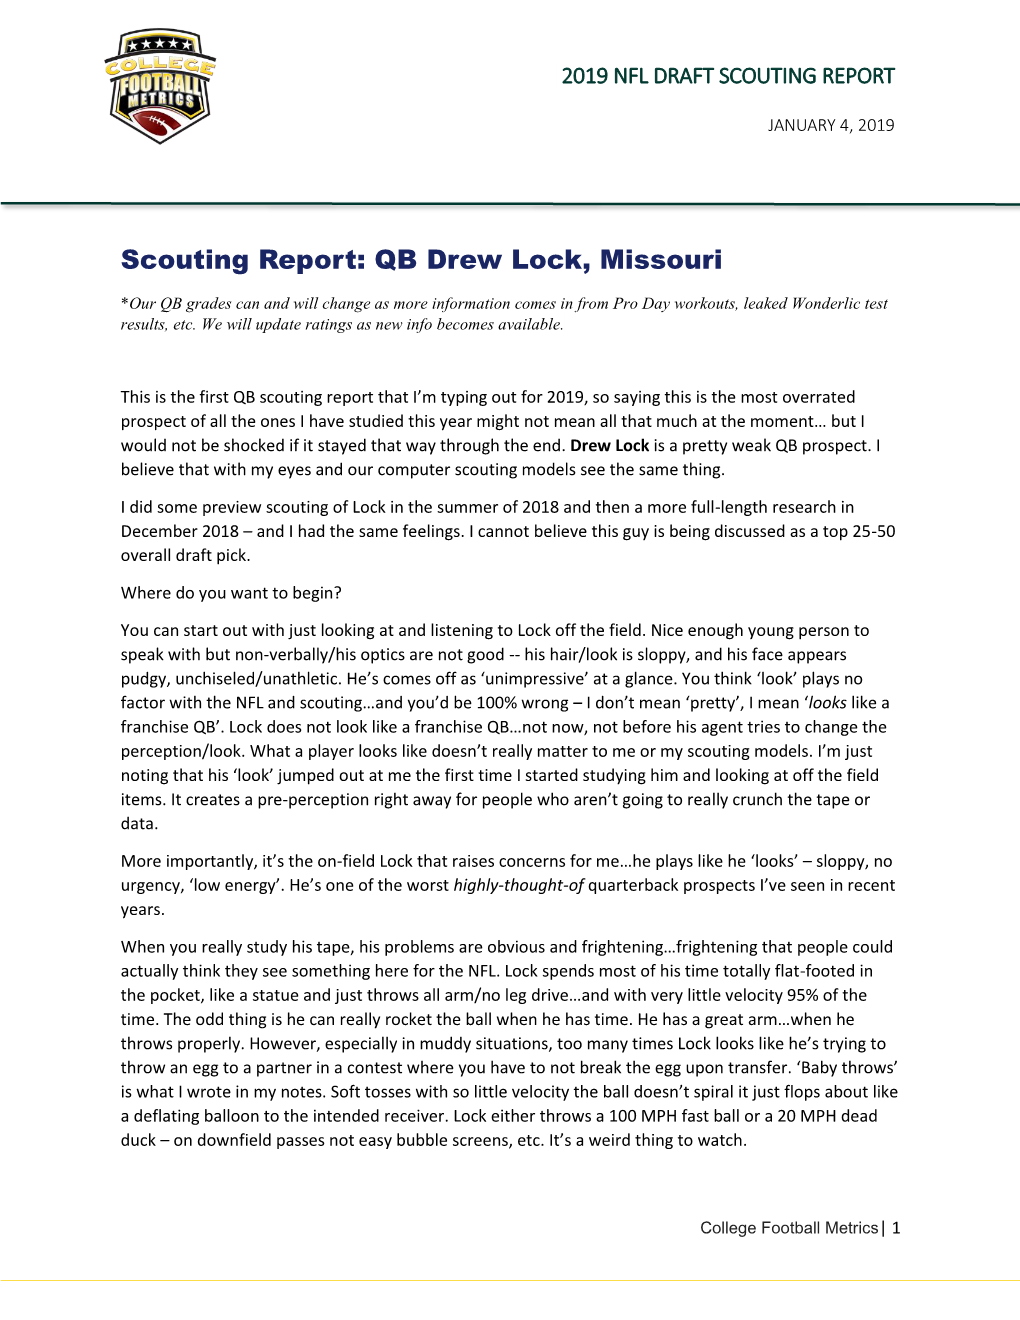 Scouting Report: QB Drew Lock, Missouri